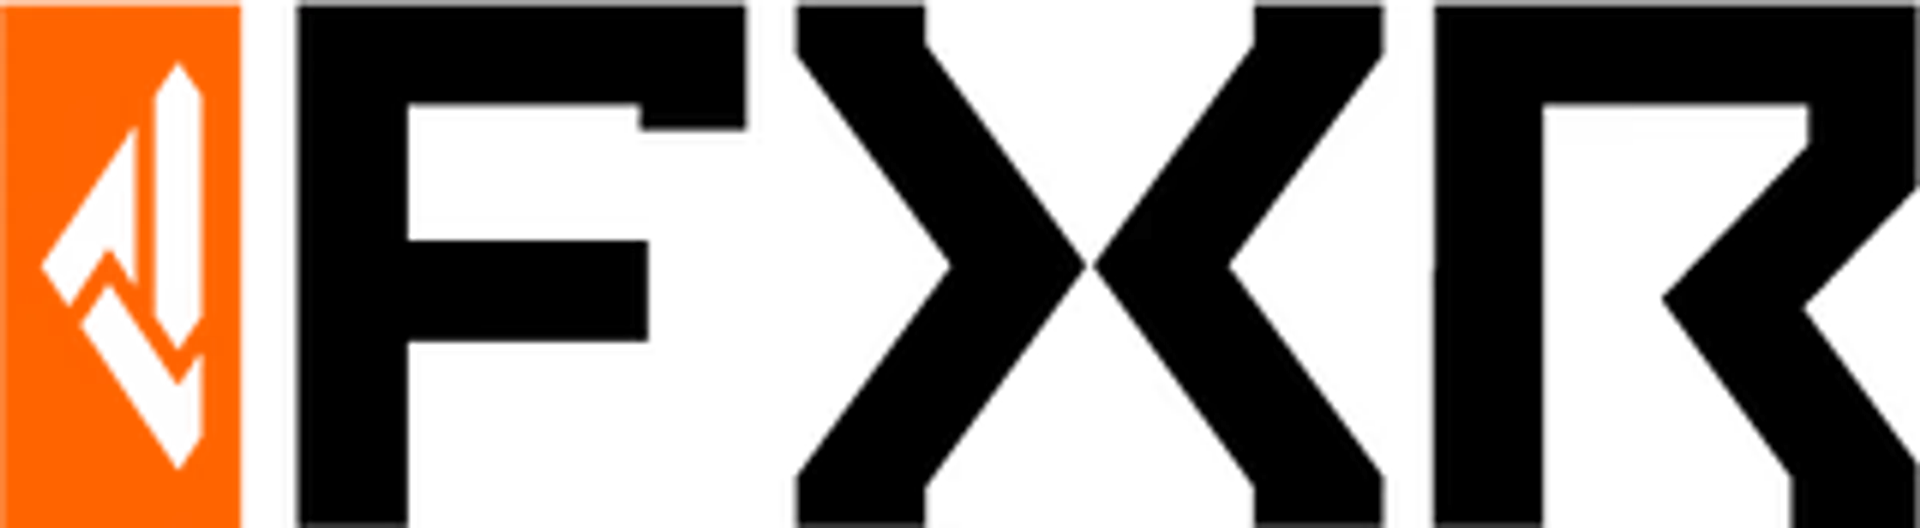 FXR logo de circulaires